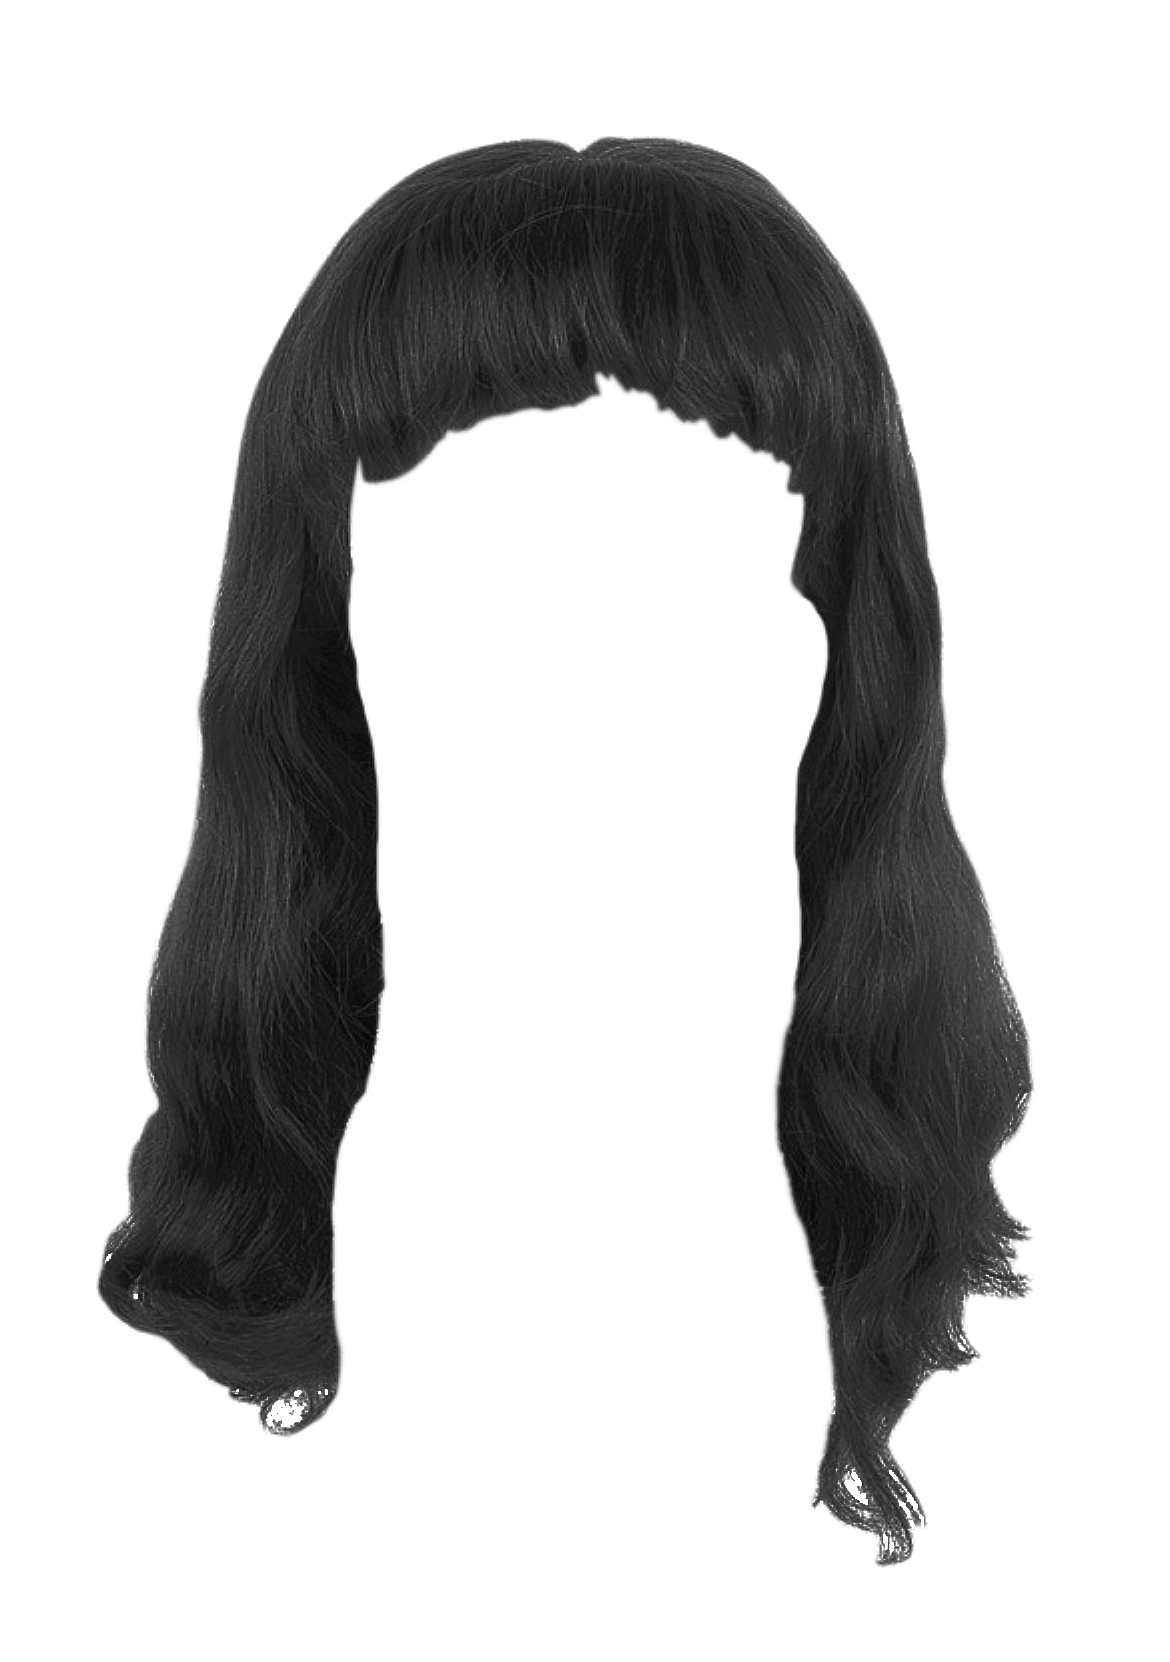 Black Women Imagen transparente del cabellos